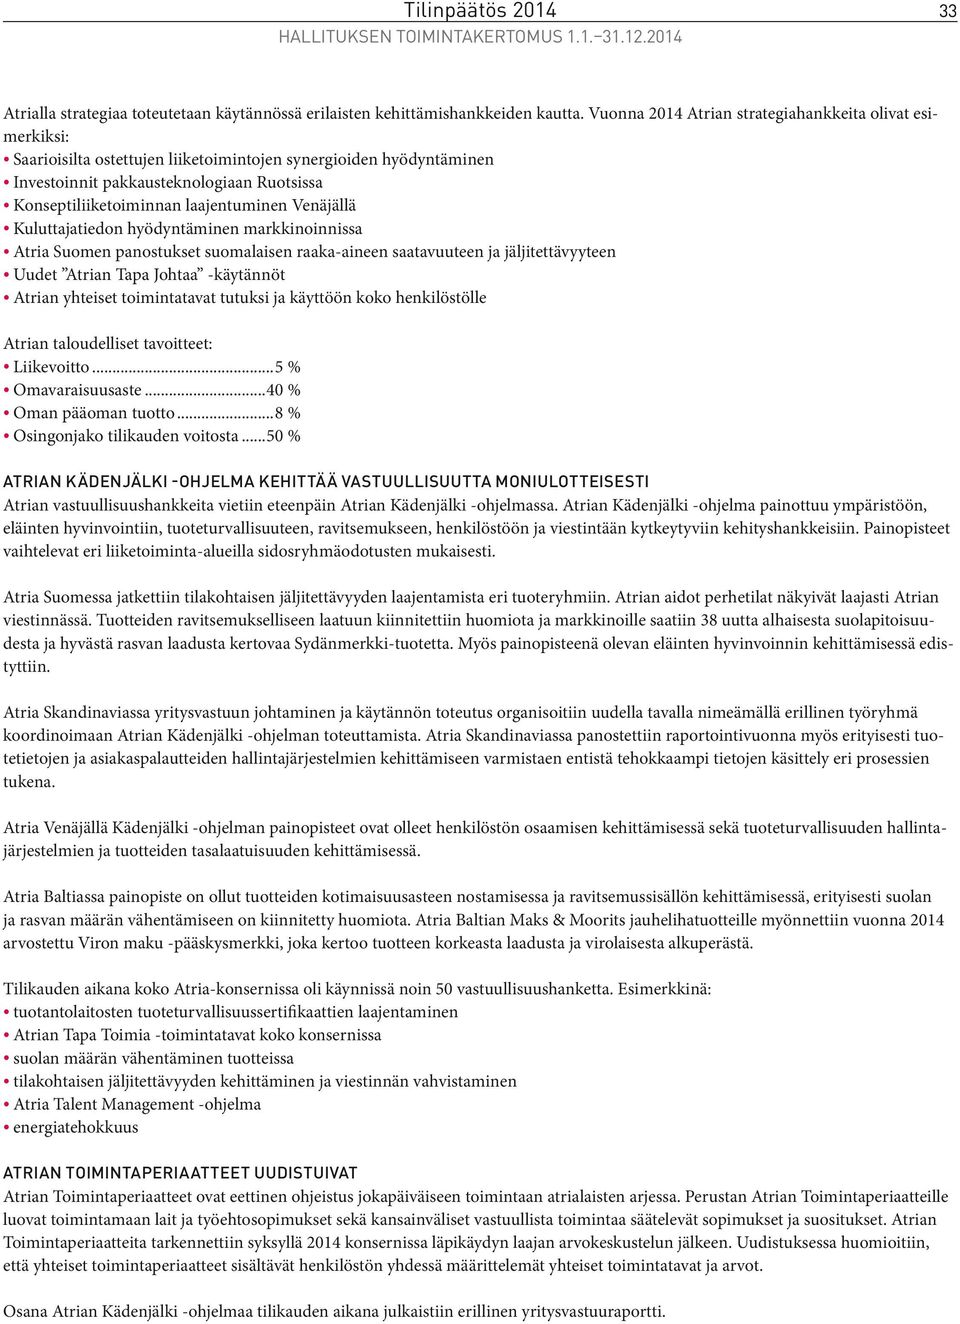 laajentuminen Venäjällä Kuluttajatiedon hyödyntäminen markkinoinnissa Atria Suomen panostukset suomalaisen raaka-aineen saatavuuteen ja jäljitettävyyteen Uudet Atrian Tapa Johtaa -käytännöt Atrian